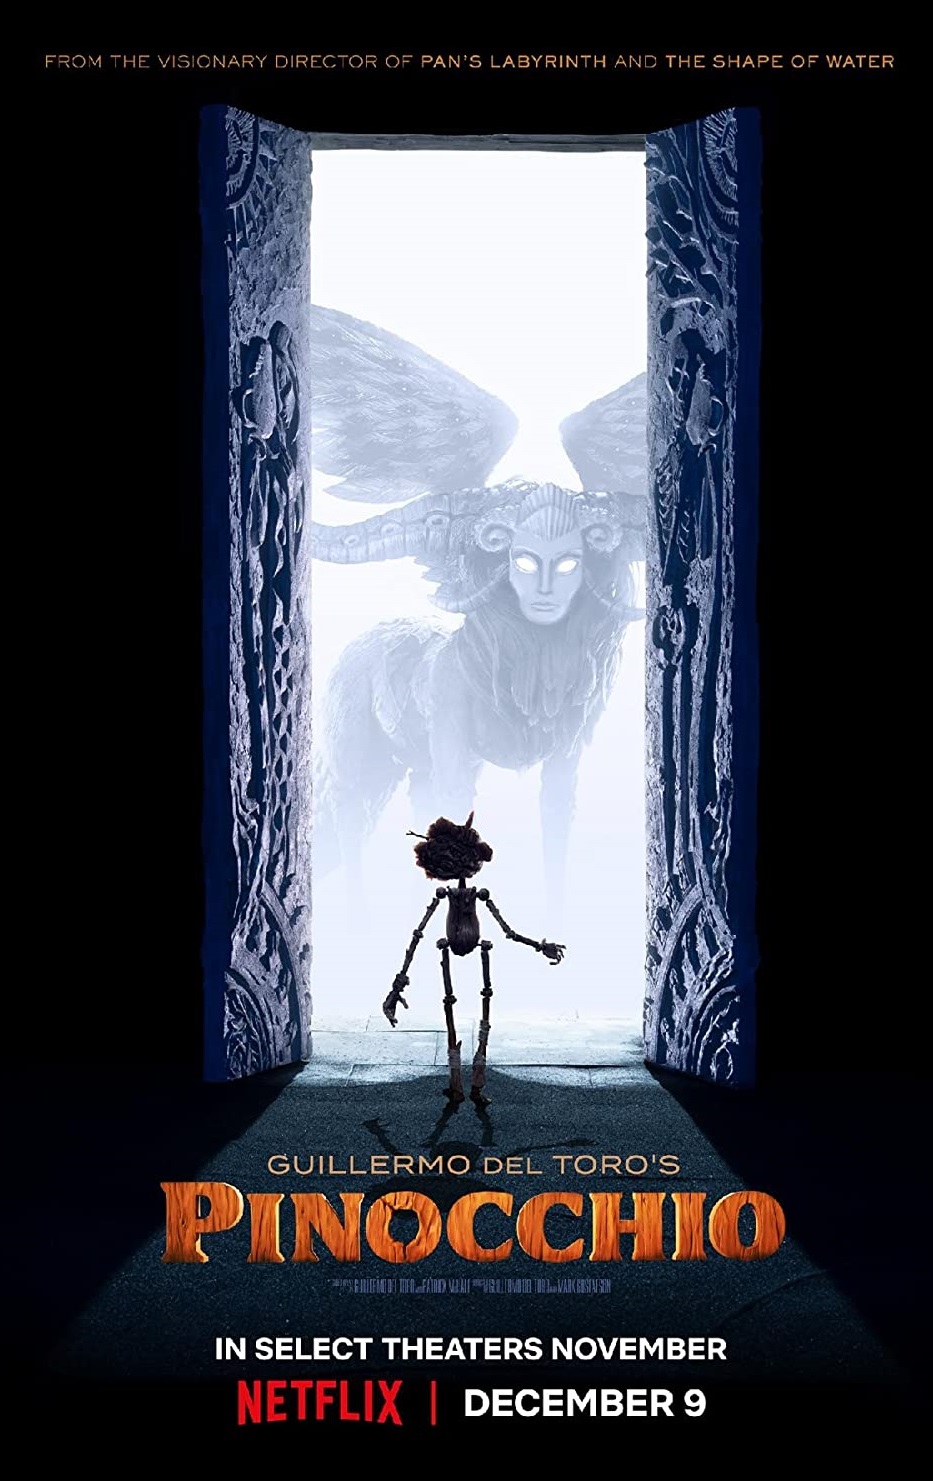 Guillermo Del Toro’s Pinocchio 2022 Tamil Dubbed Animation Movie Online